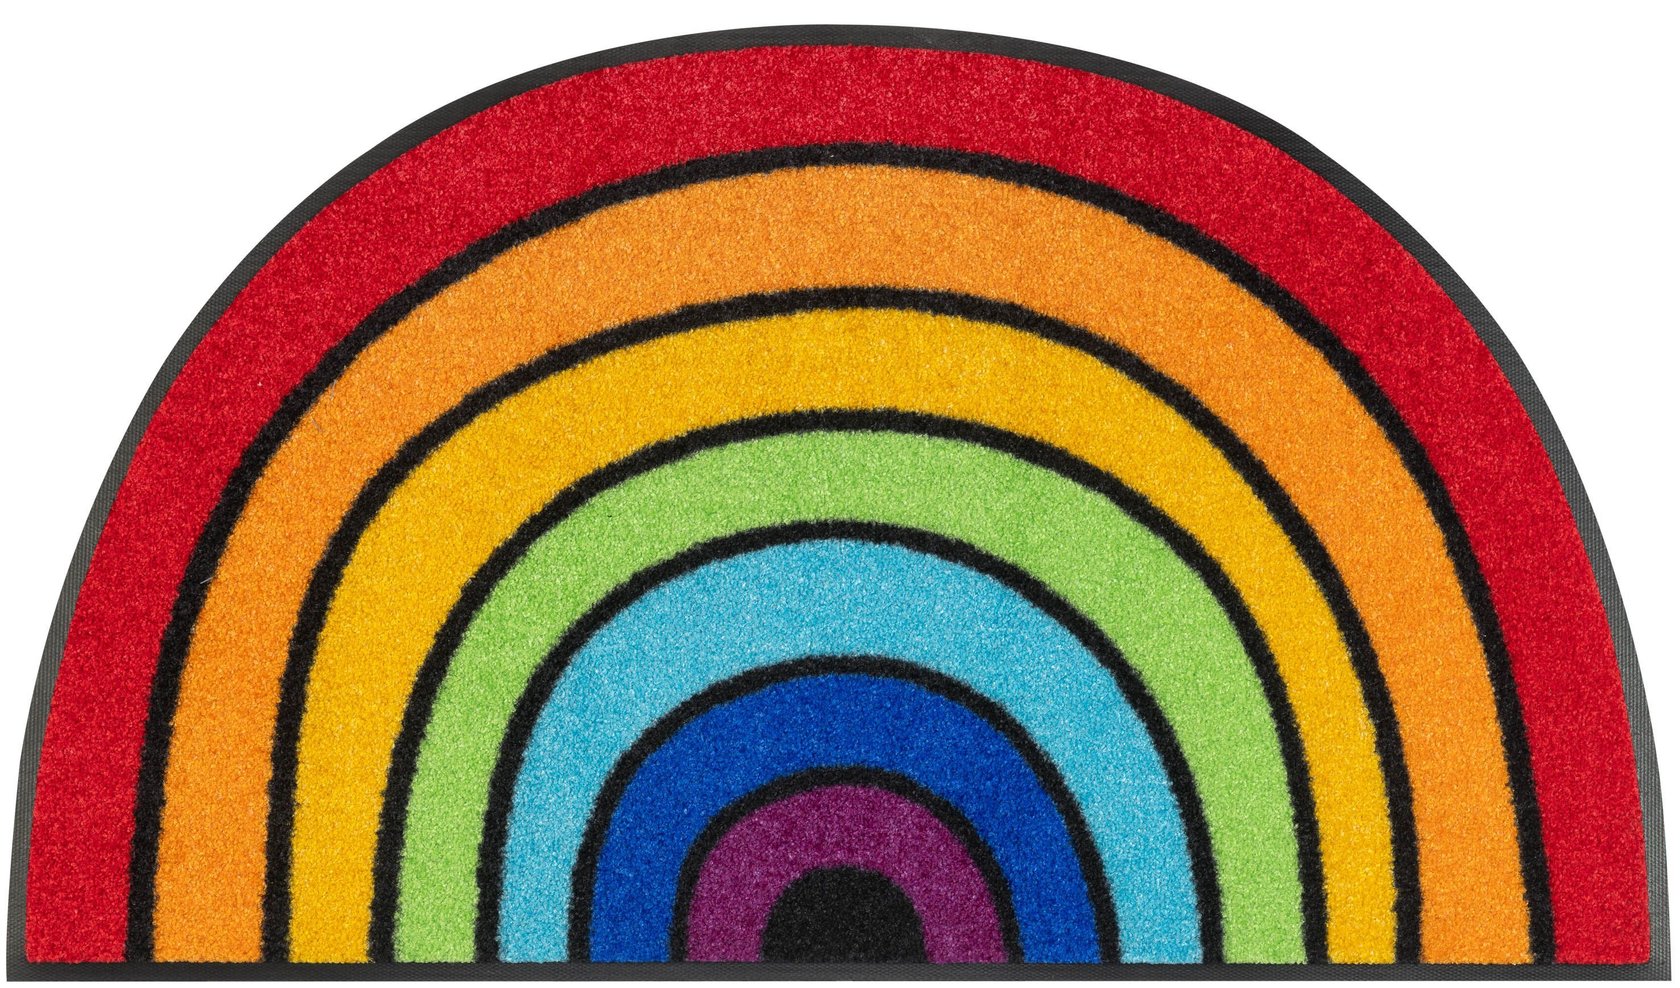 Round Rainbow Fußmatte 50x85 cm waschbar